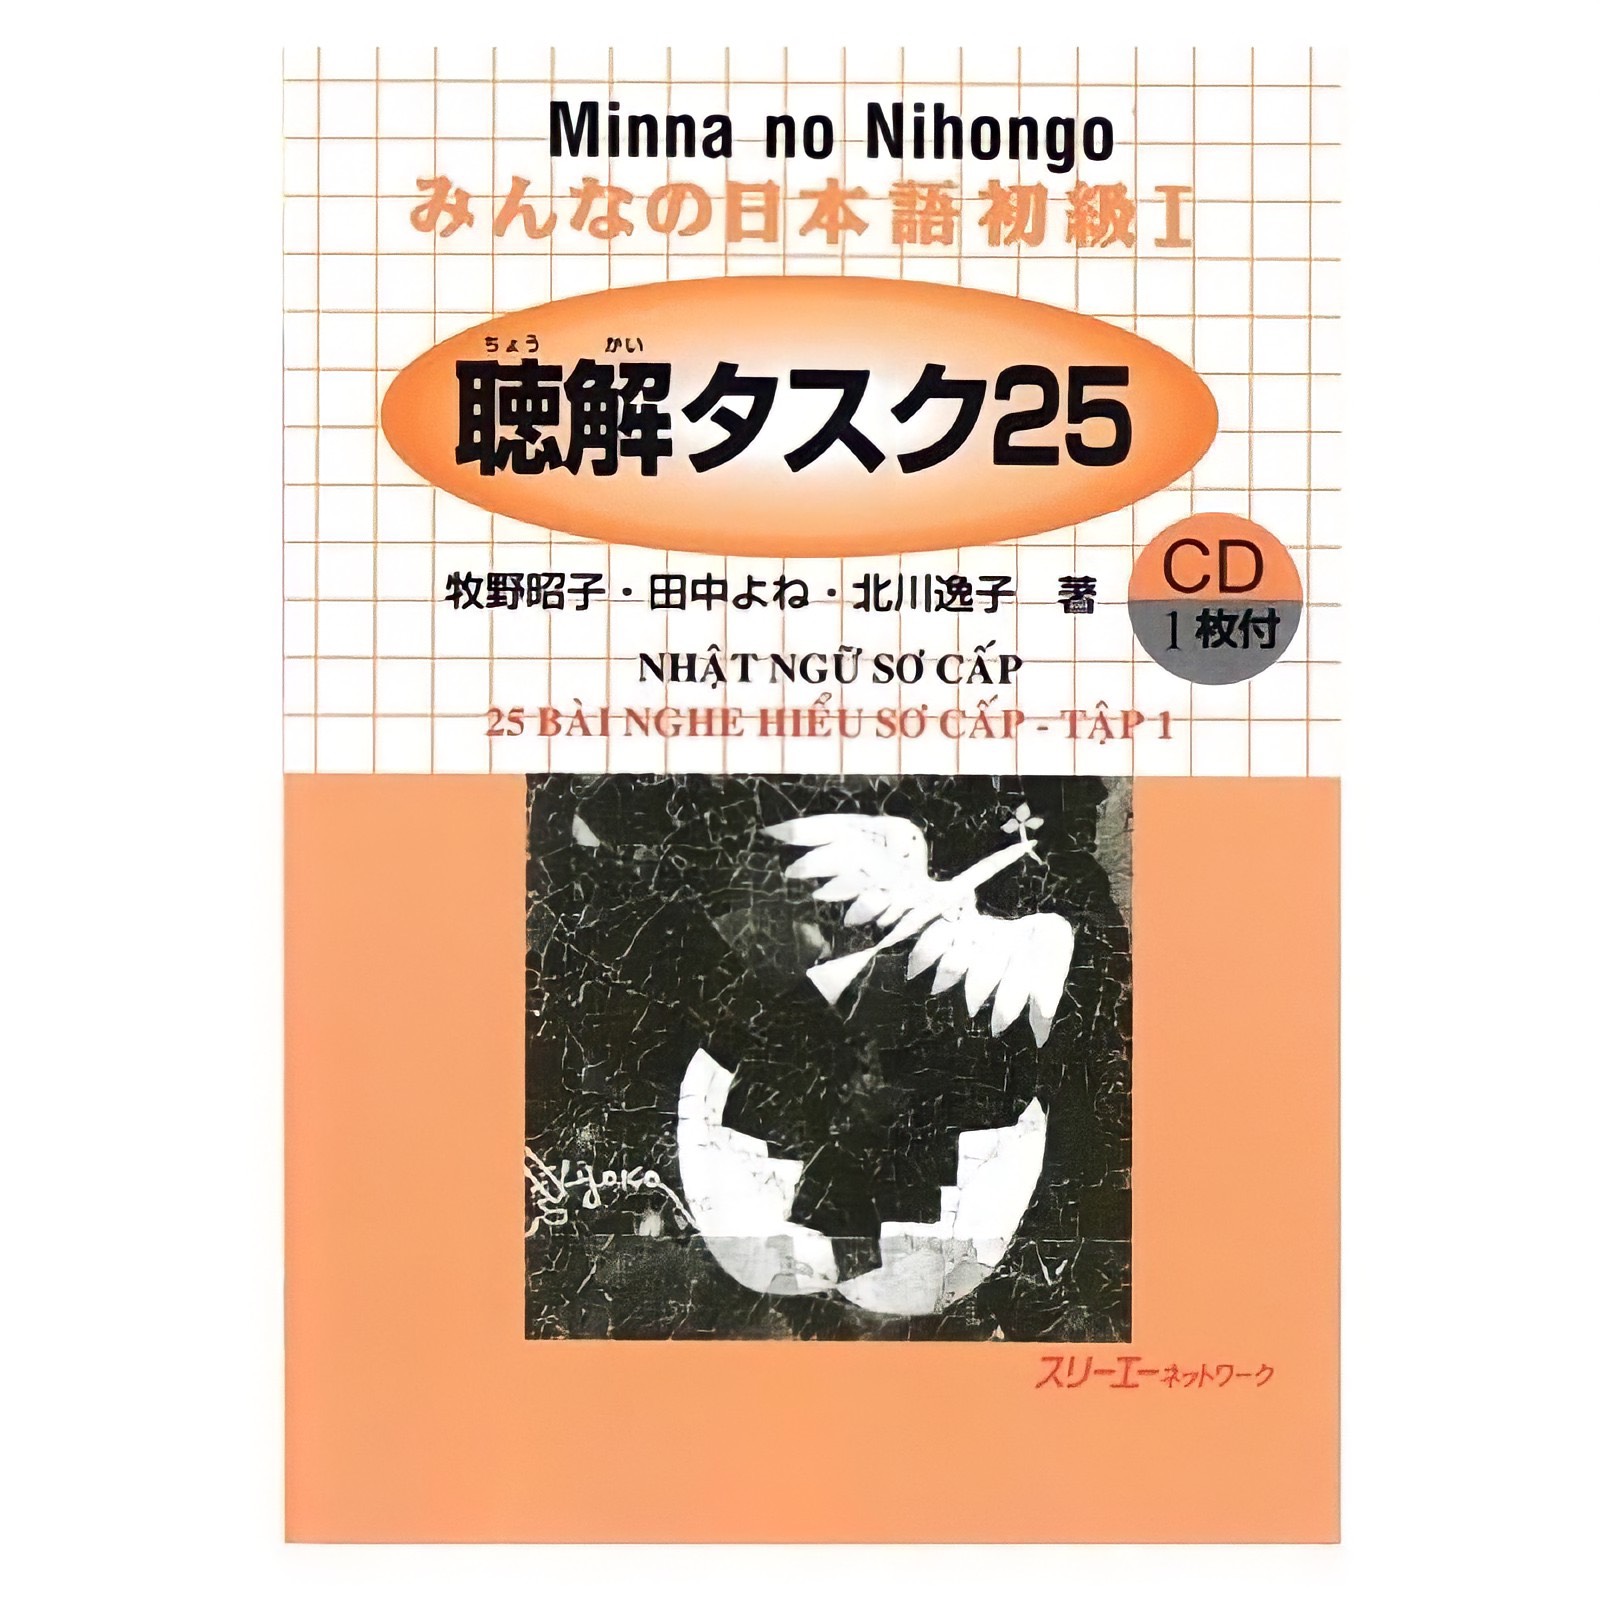 Sách Minna No Nihongo Sơ cấp 1 bản cũ: Choukai tasuku, 25 bài nghe hiểu, giá rẻ